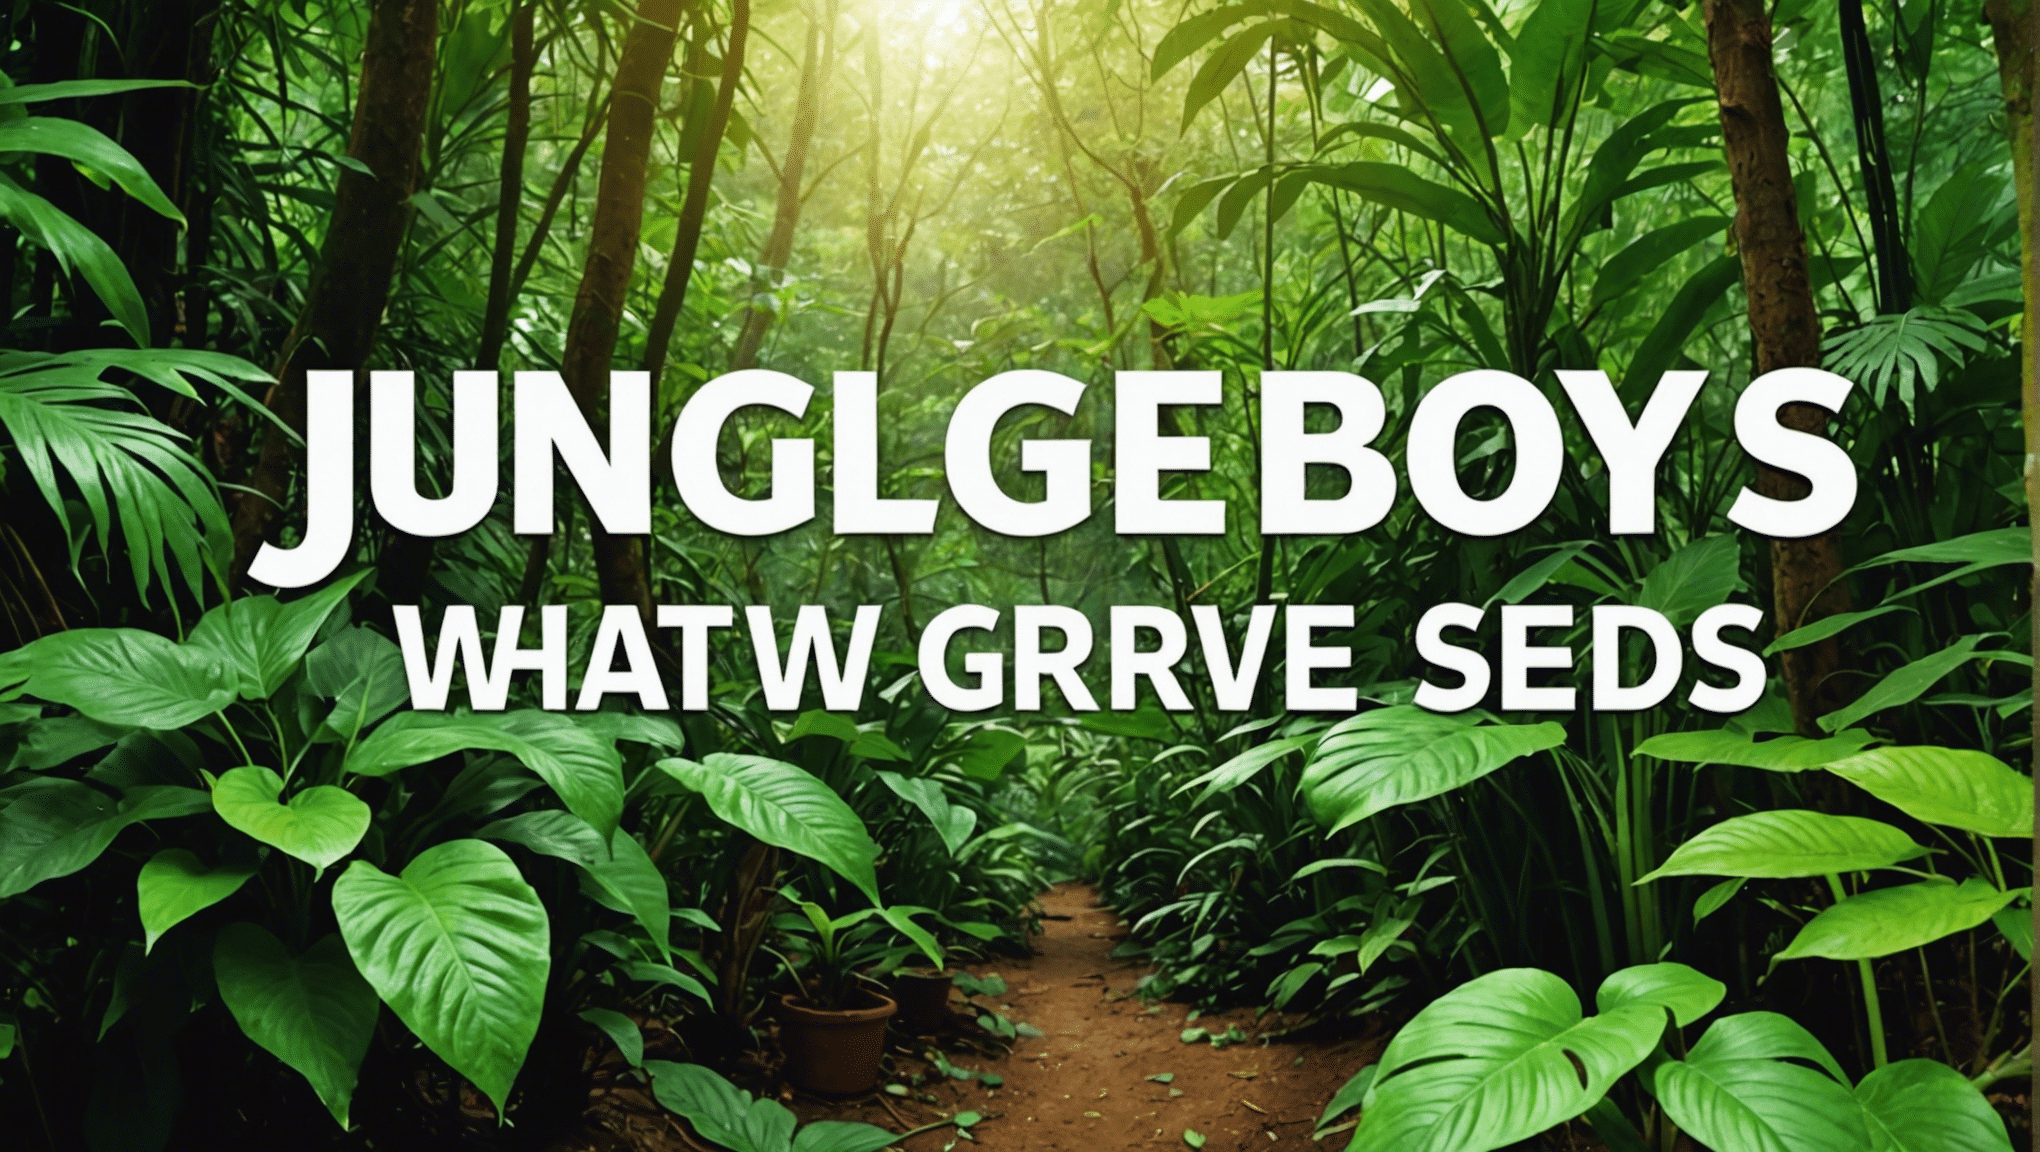 Entdecken Sie in diesem umfassenden Handbuch die Bedeutung von Jungle Boys-Samen und ihren Wachstumsprozess. Erfahren Sie mehr über die einzigartigen Eigenschaften und Anbautechniken von Jungle Boys-Samen.